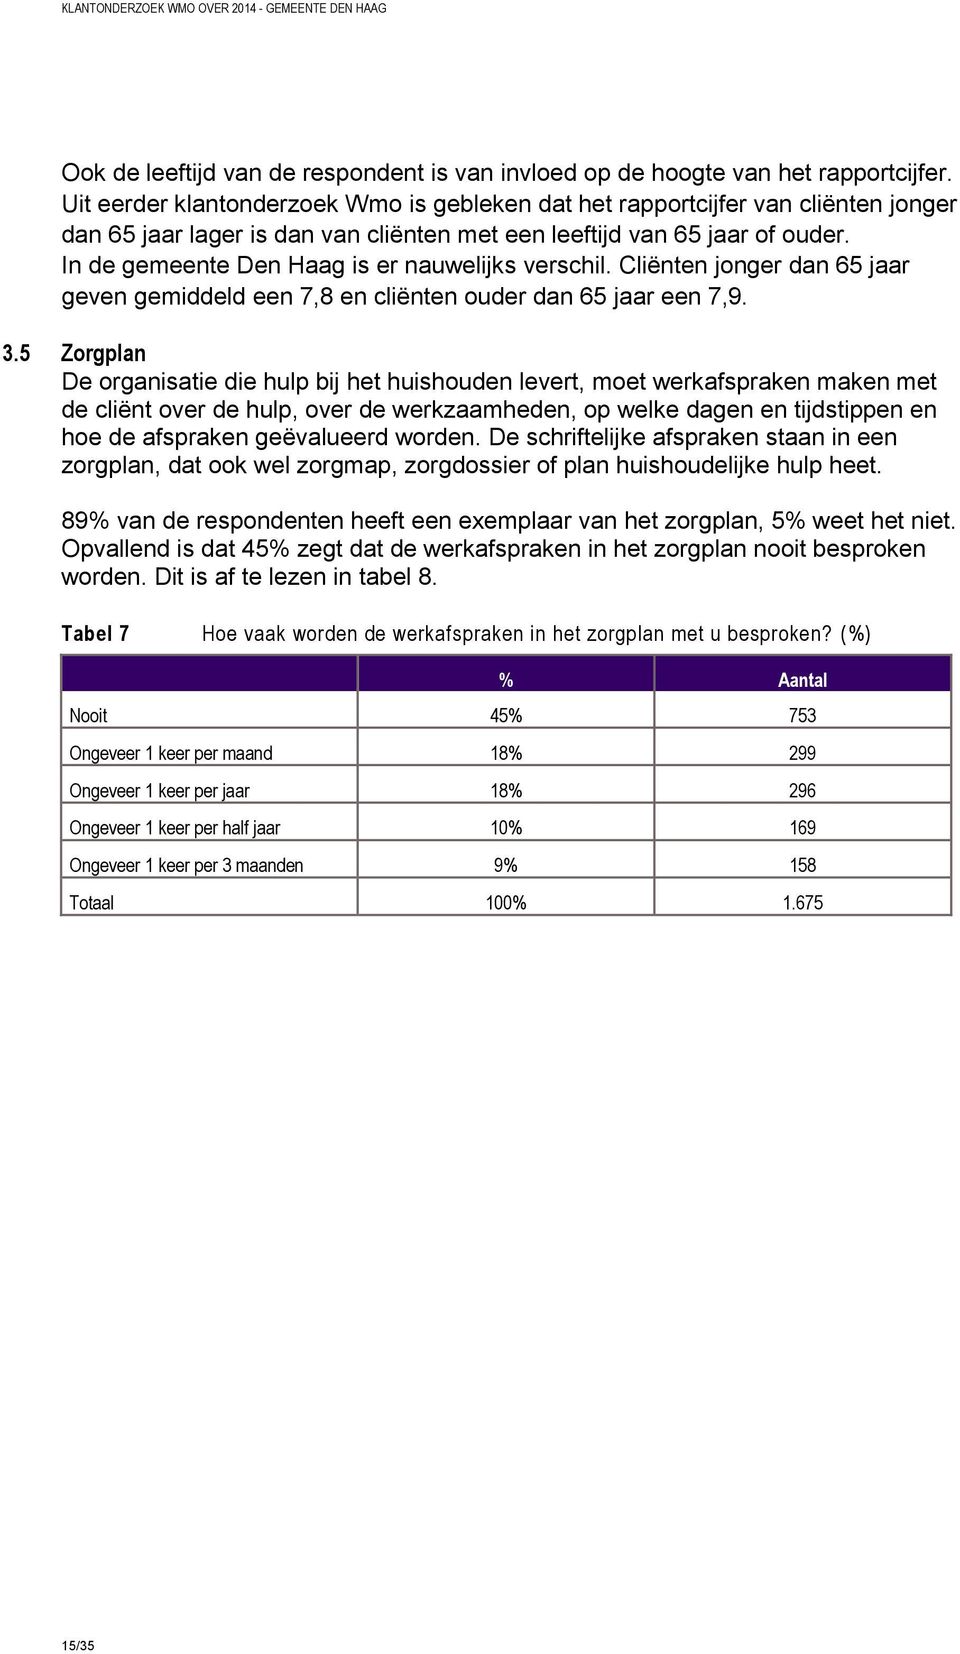 In de gemeente Den Haag is er nauwelijks verschil. Cliënten jonger dan 65 jaar geven gemiddeld een 7,8 en cliënten ouder dan 65 jaar een 7,9. 3.